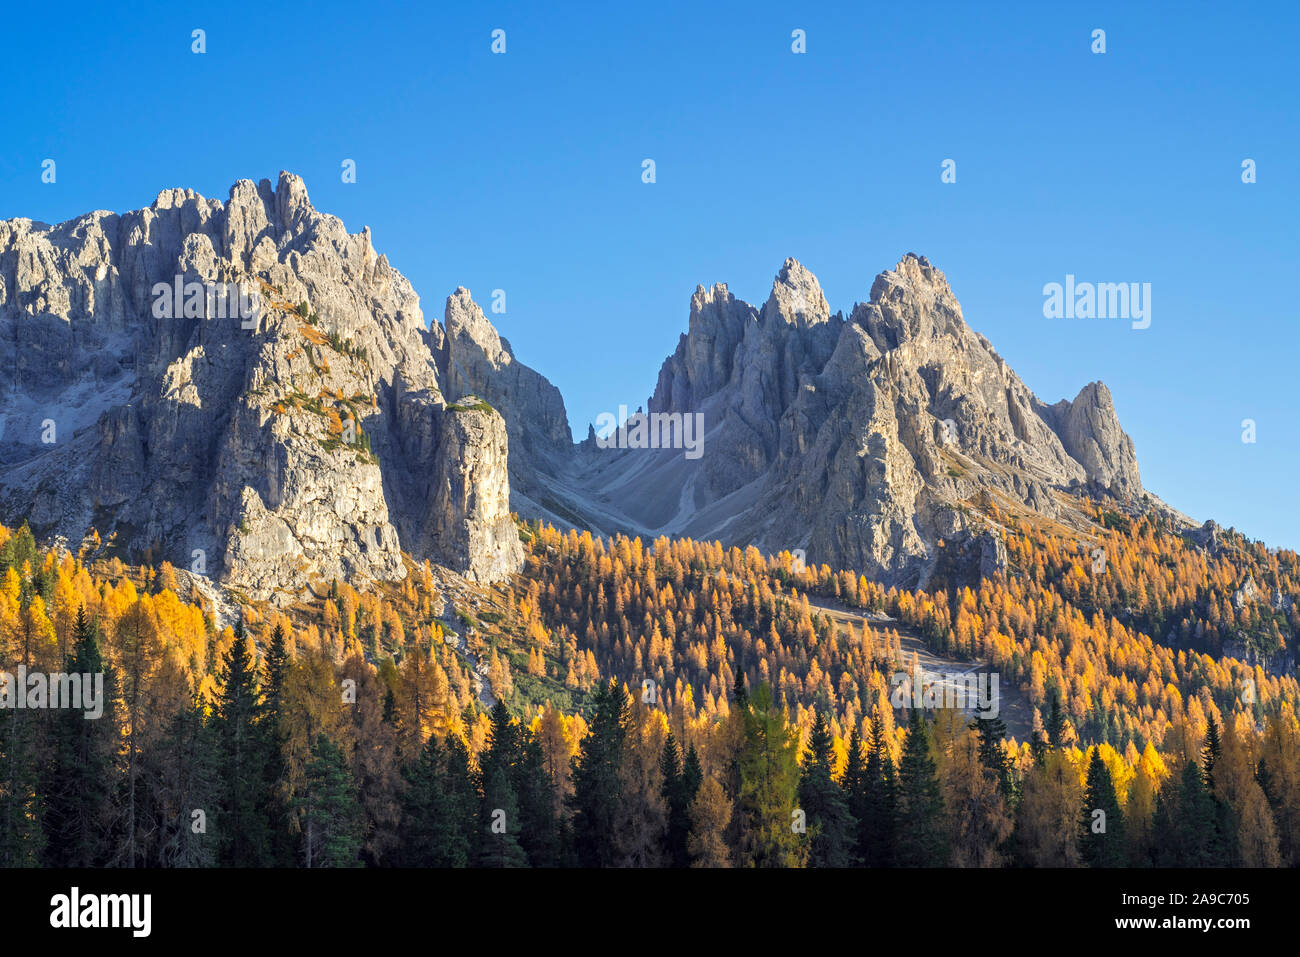 North face of the mountain Cadini di Misurina in autumn / fall in the Sesto / Sexten Dolomites, Belluno, South Tyrol, Italy Stock Photo